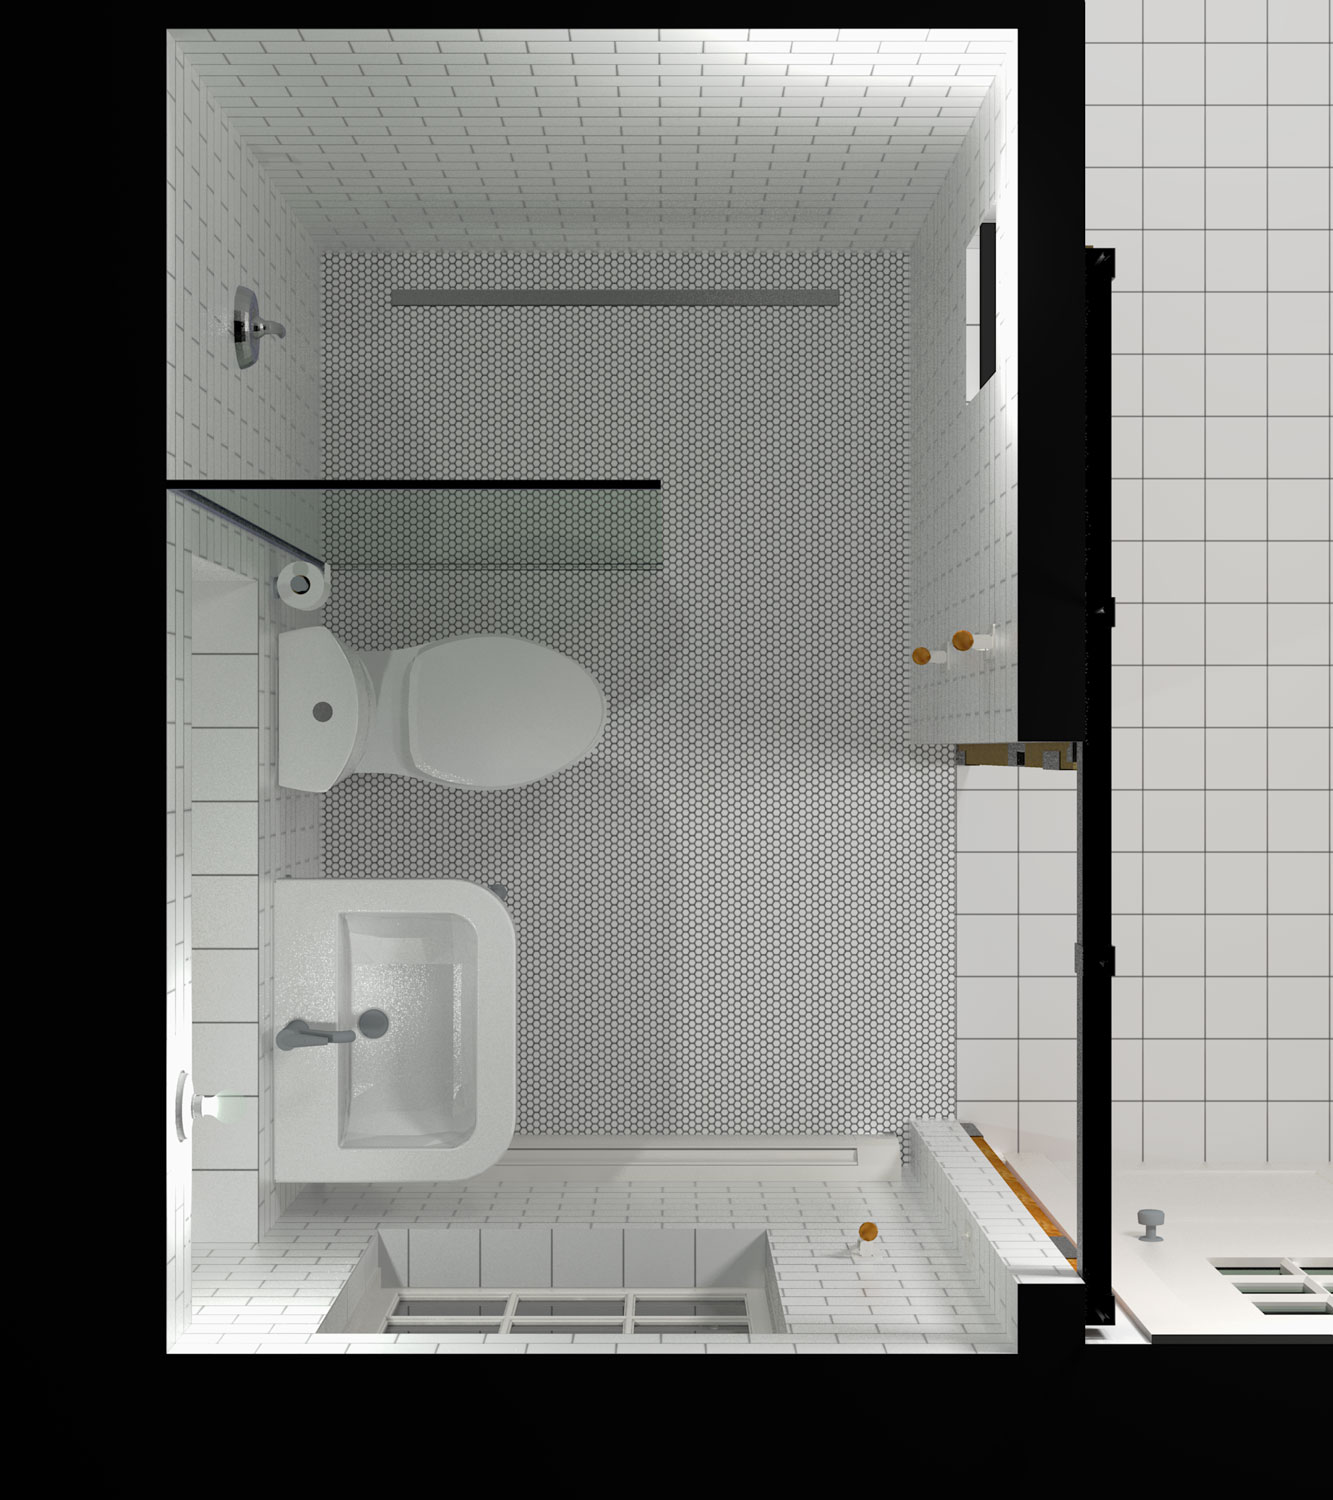  bathroom concept